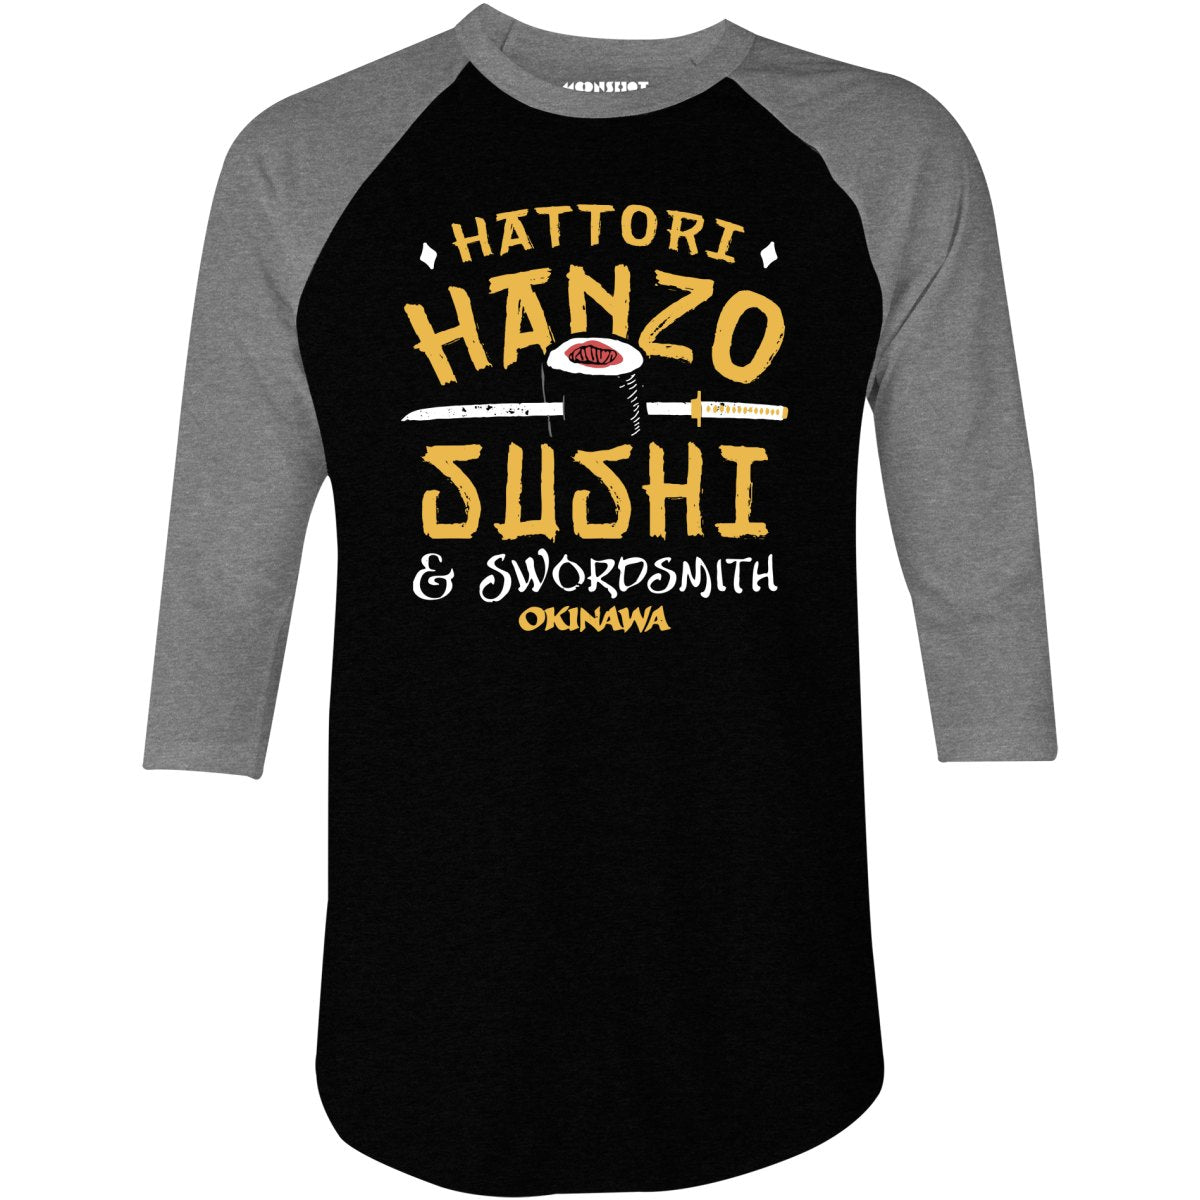 Hattori Hanzo Sushi & Swordsmith - 3/4 Sleeve Raglan T-Shirt